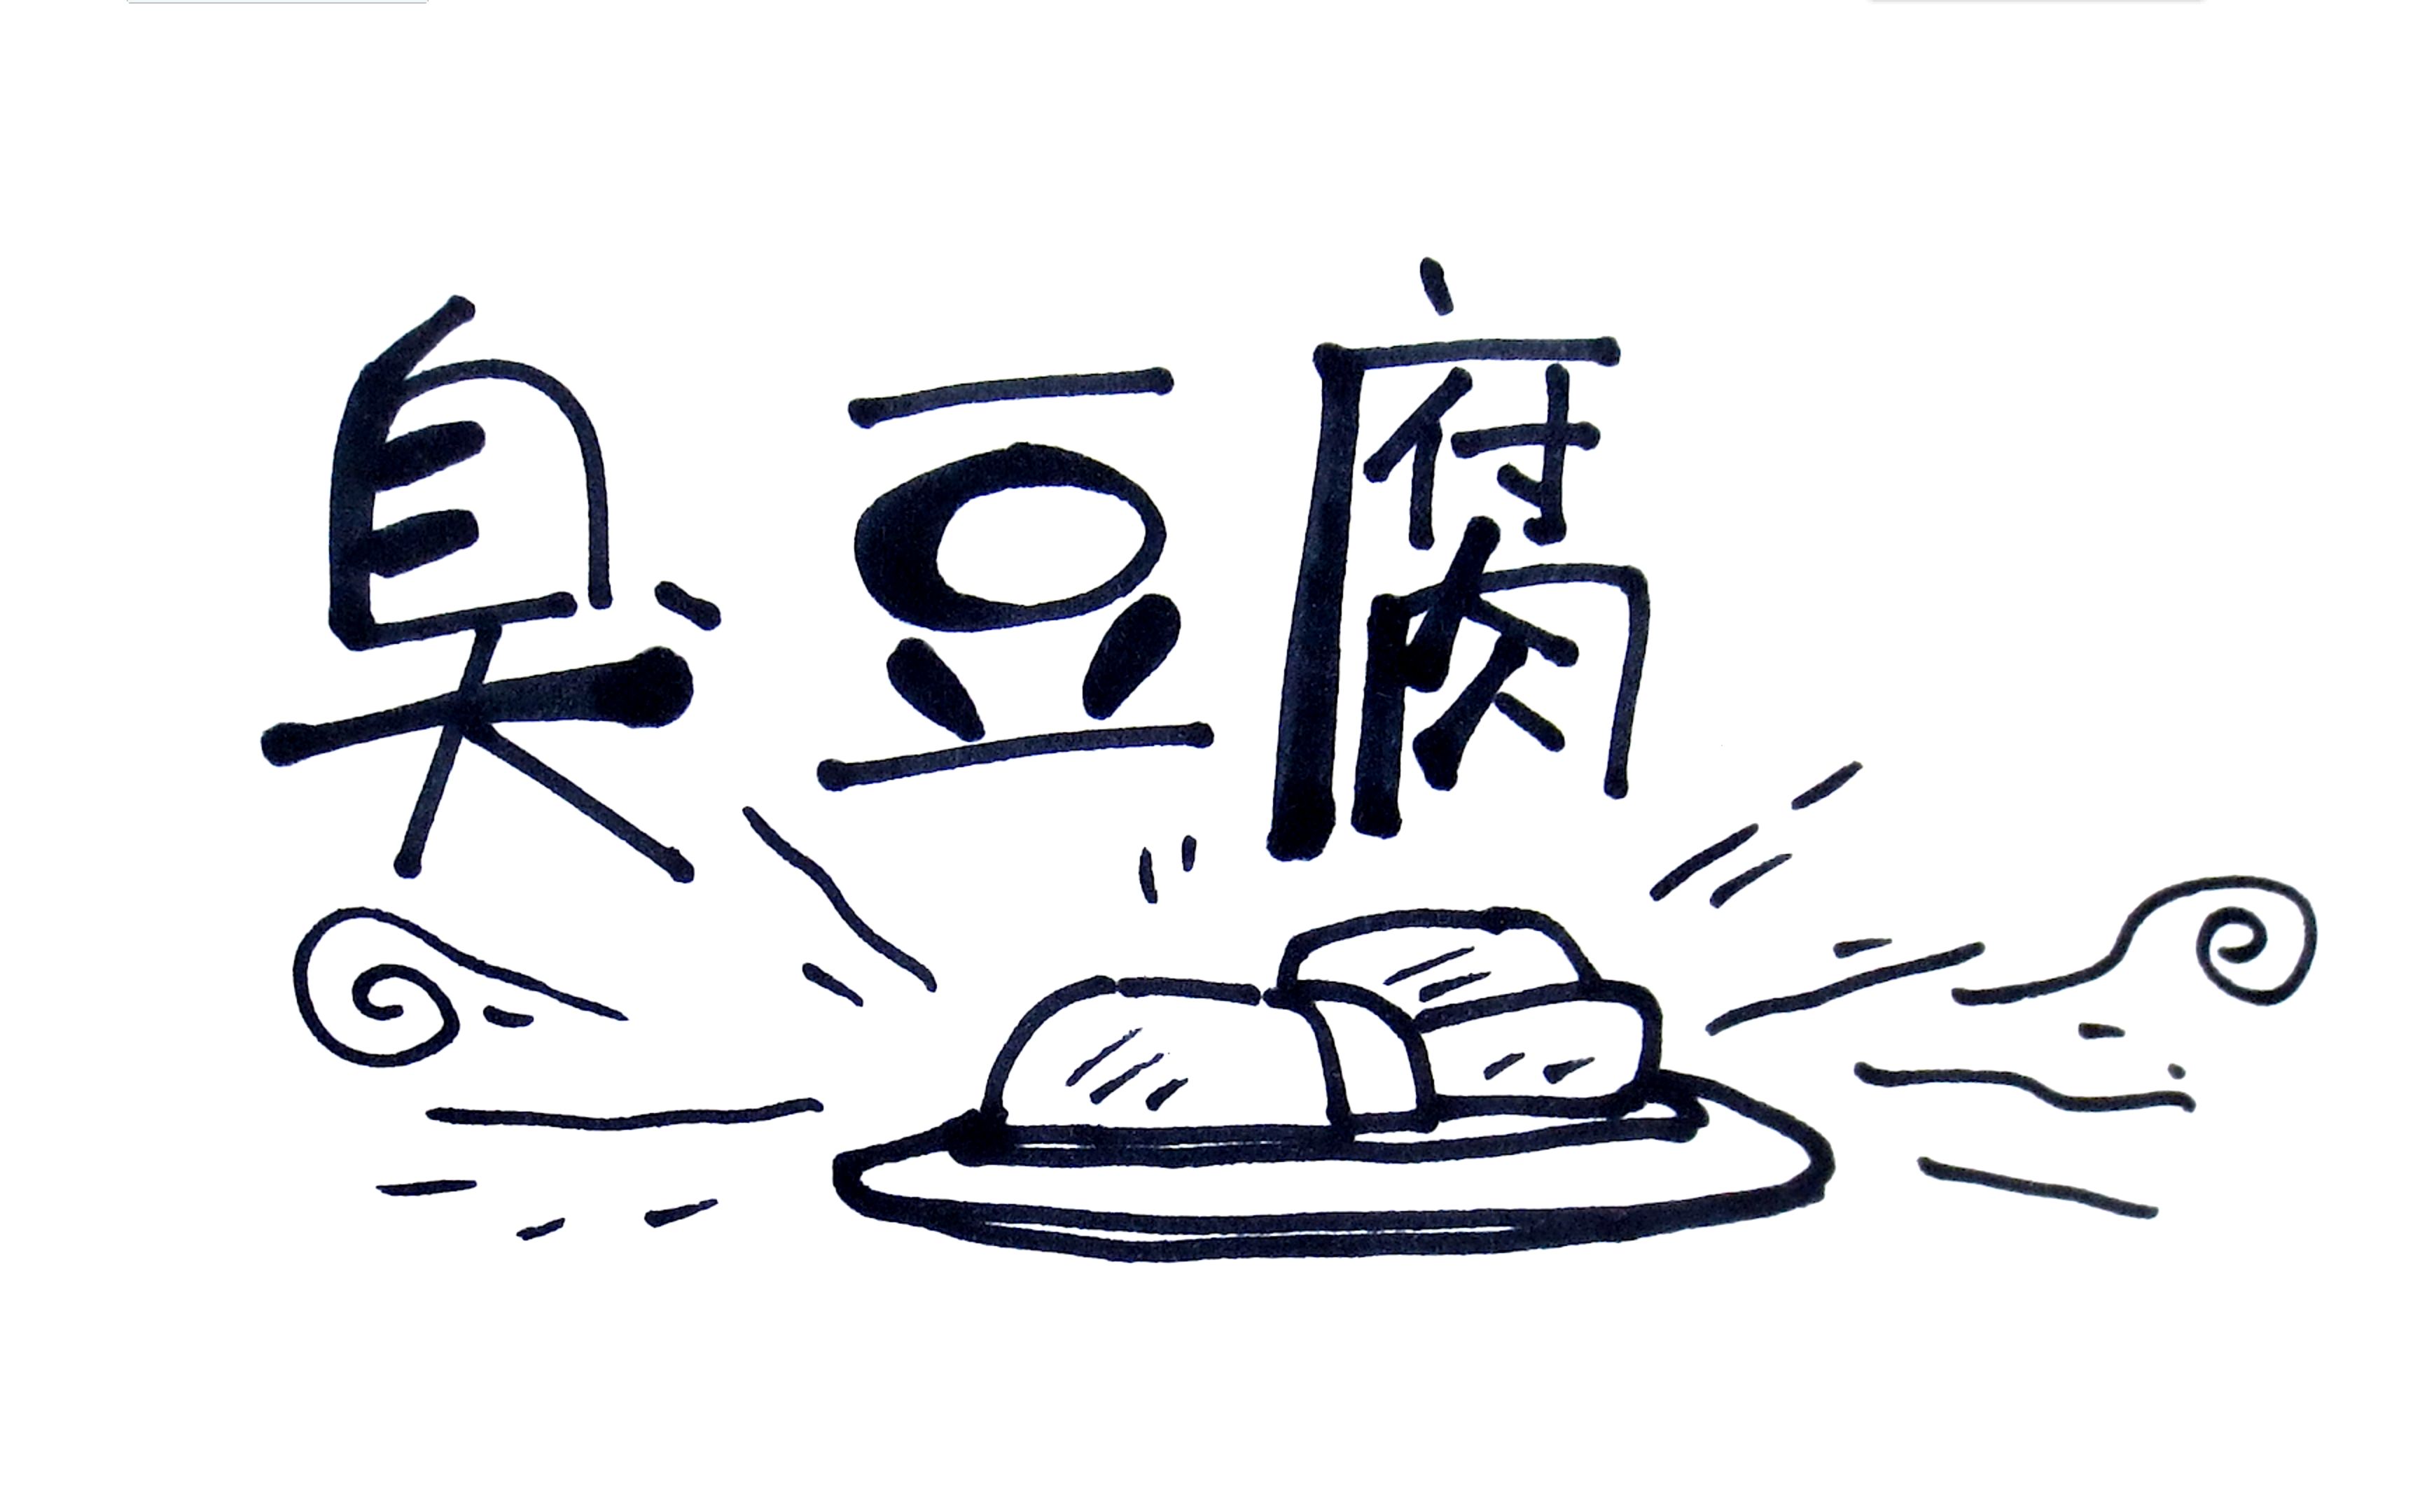 【笔尖科学】29 臭豆腐